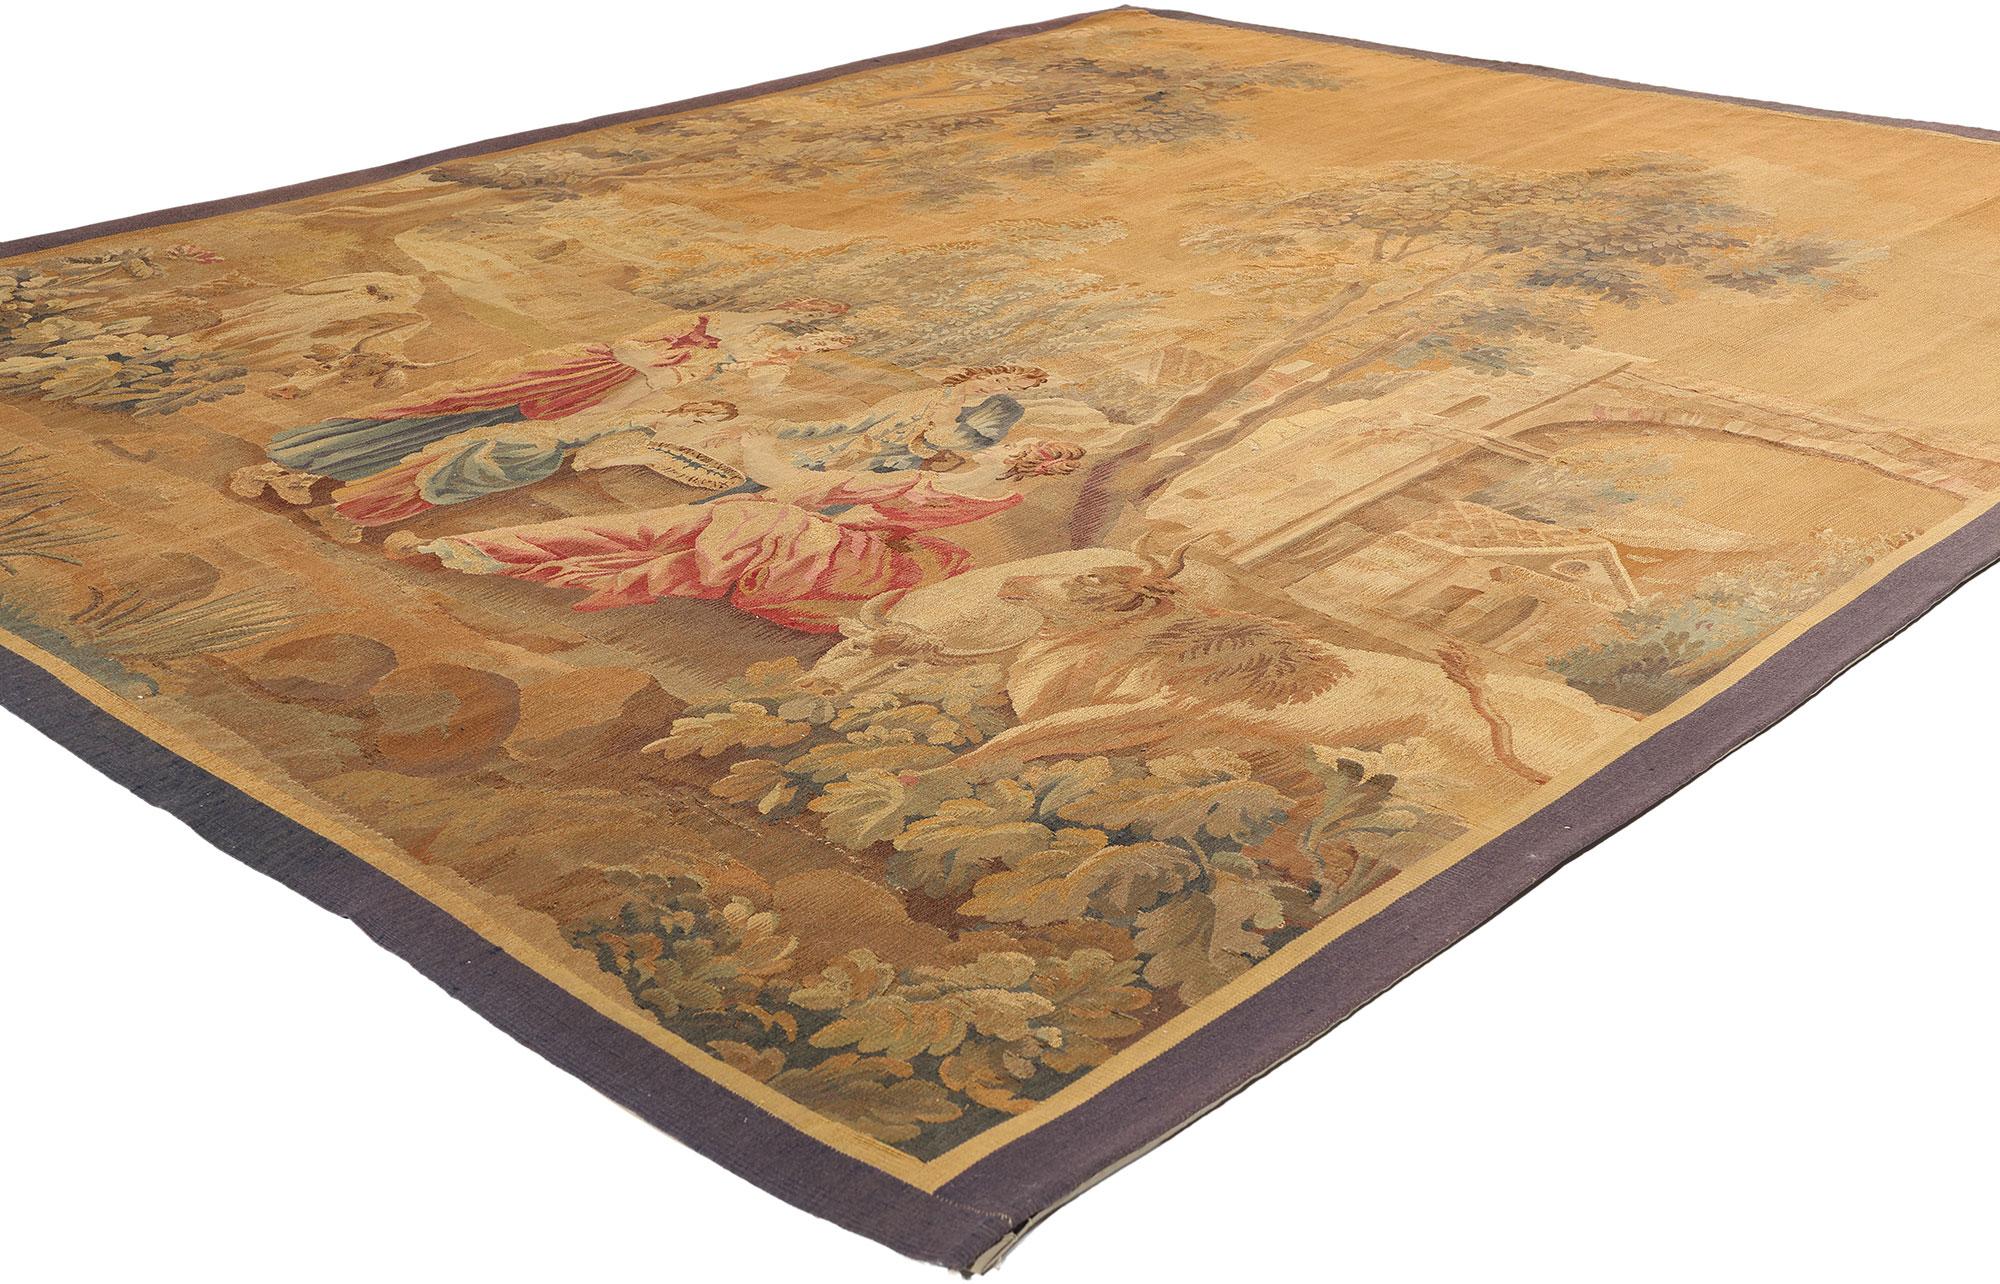 73625 Antiker französischer Aubusson-Wandteppich aus dem späten 19. Jahrhundert, 07'06 x 09'00. Französische Aubusson-Wandteppiche, die aus Aubusson in Frankreich stammen, sind aufwendig gewebte Textilien, die seit dem 14. Jahrhundert für ihre